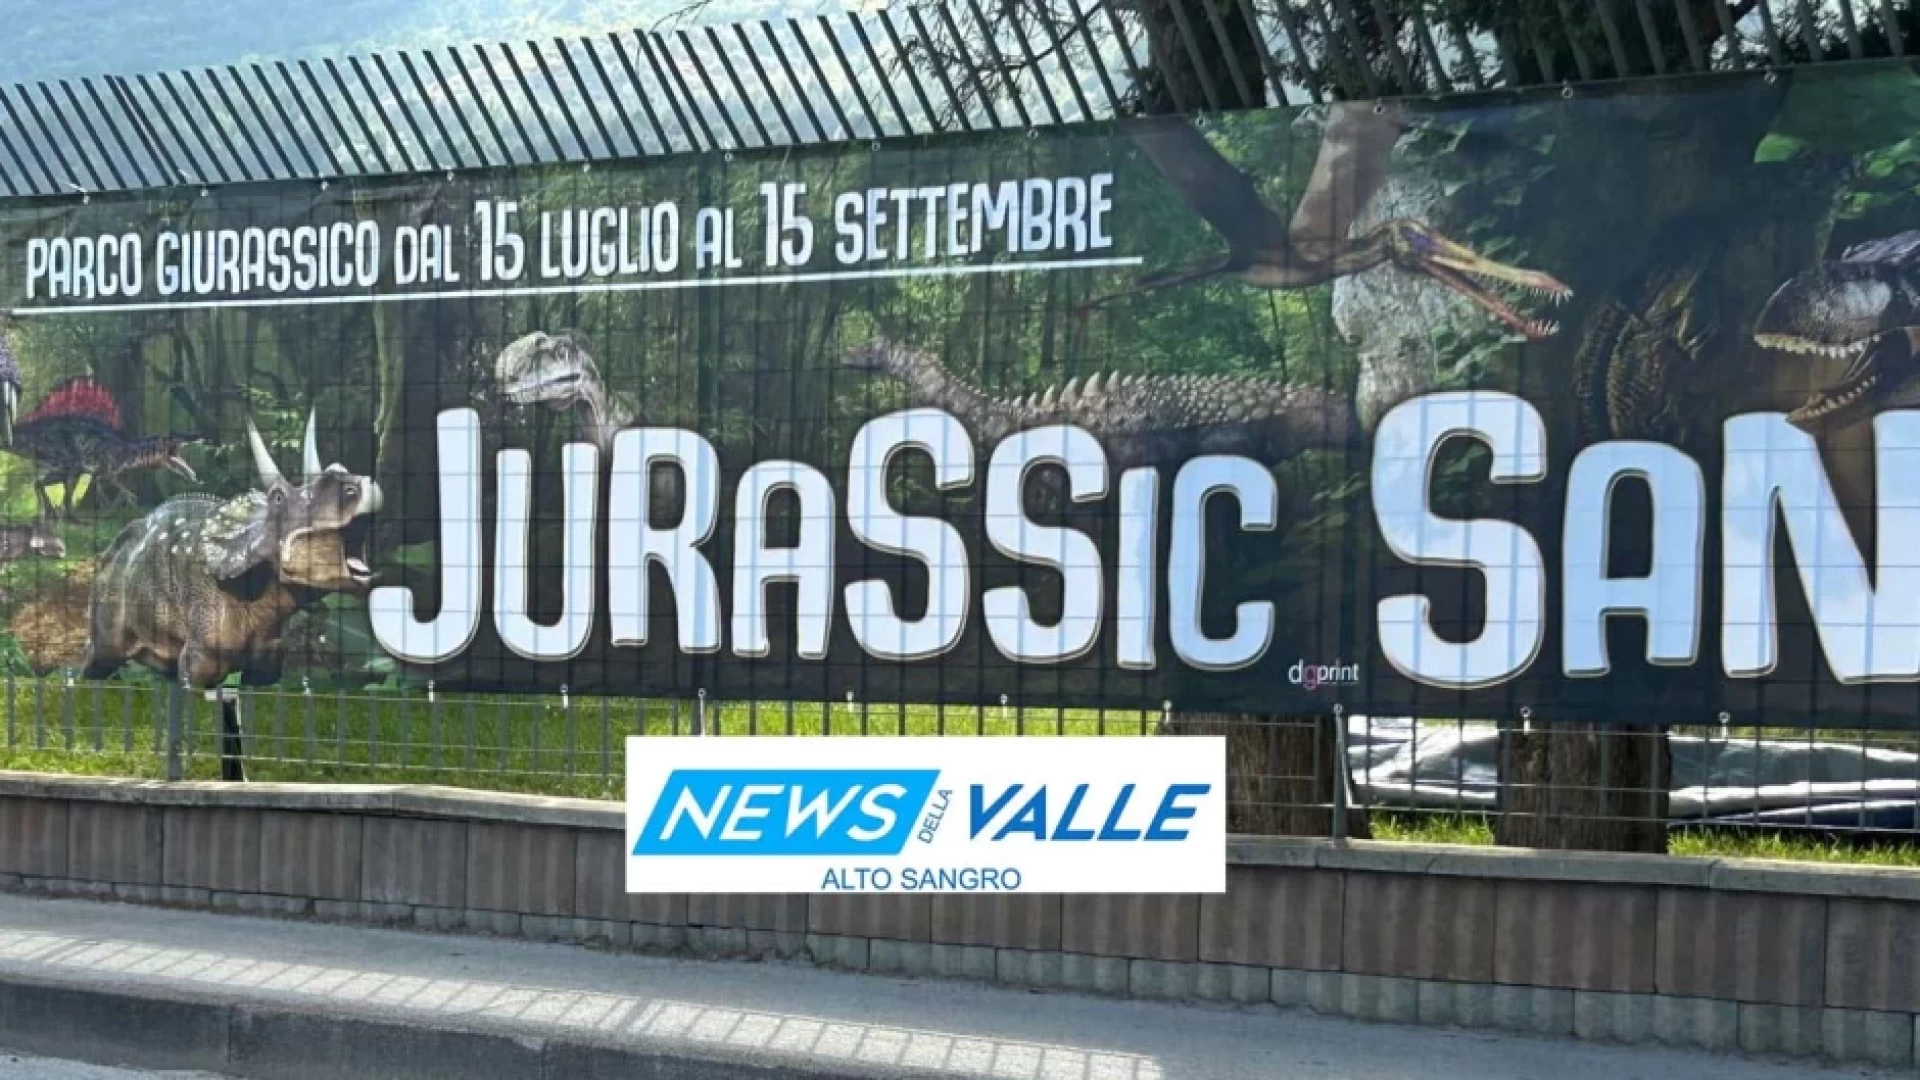 Jurassic Sangro, il parco dei dinosauri più grandi del centro Sud Italia. Il sindaco Caruso: Una grande novità per il territorio”.